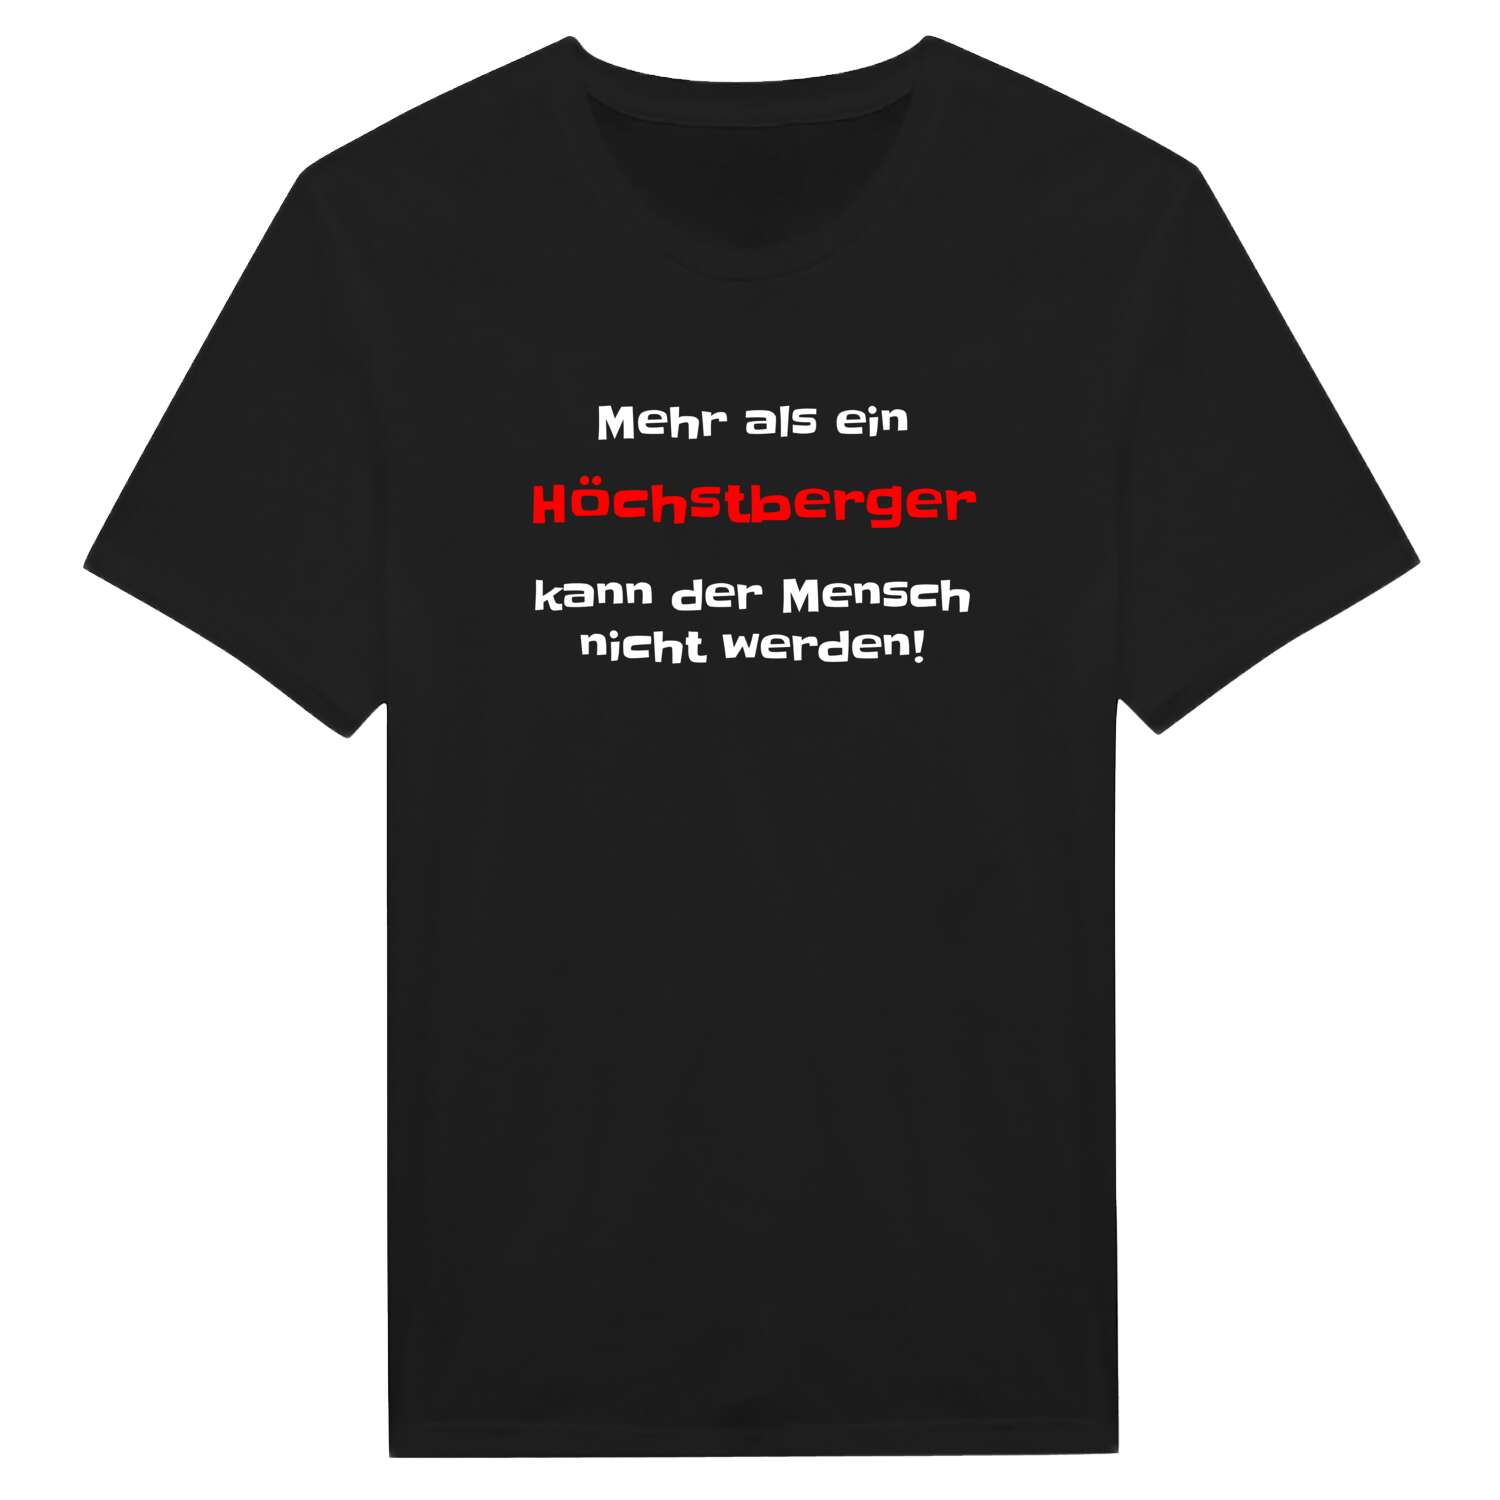 Höchstberg T-Shirt »Mehr als ein«